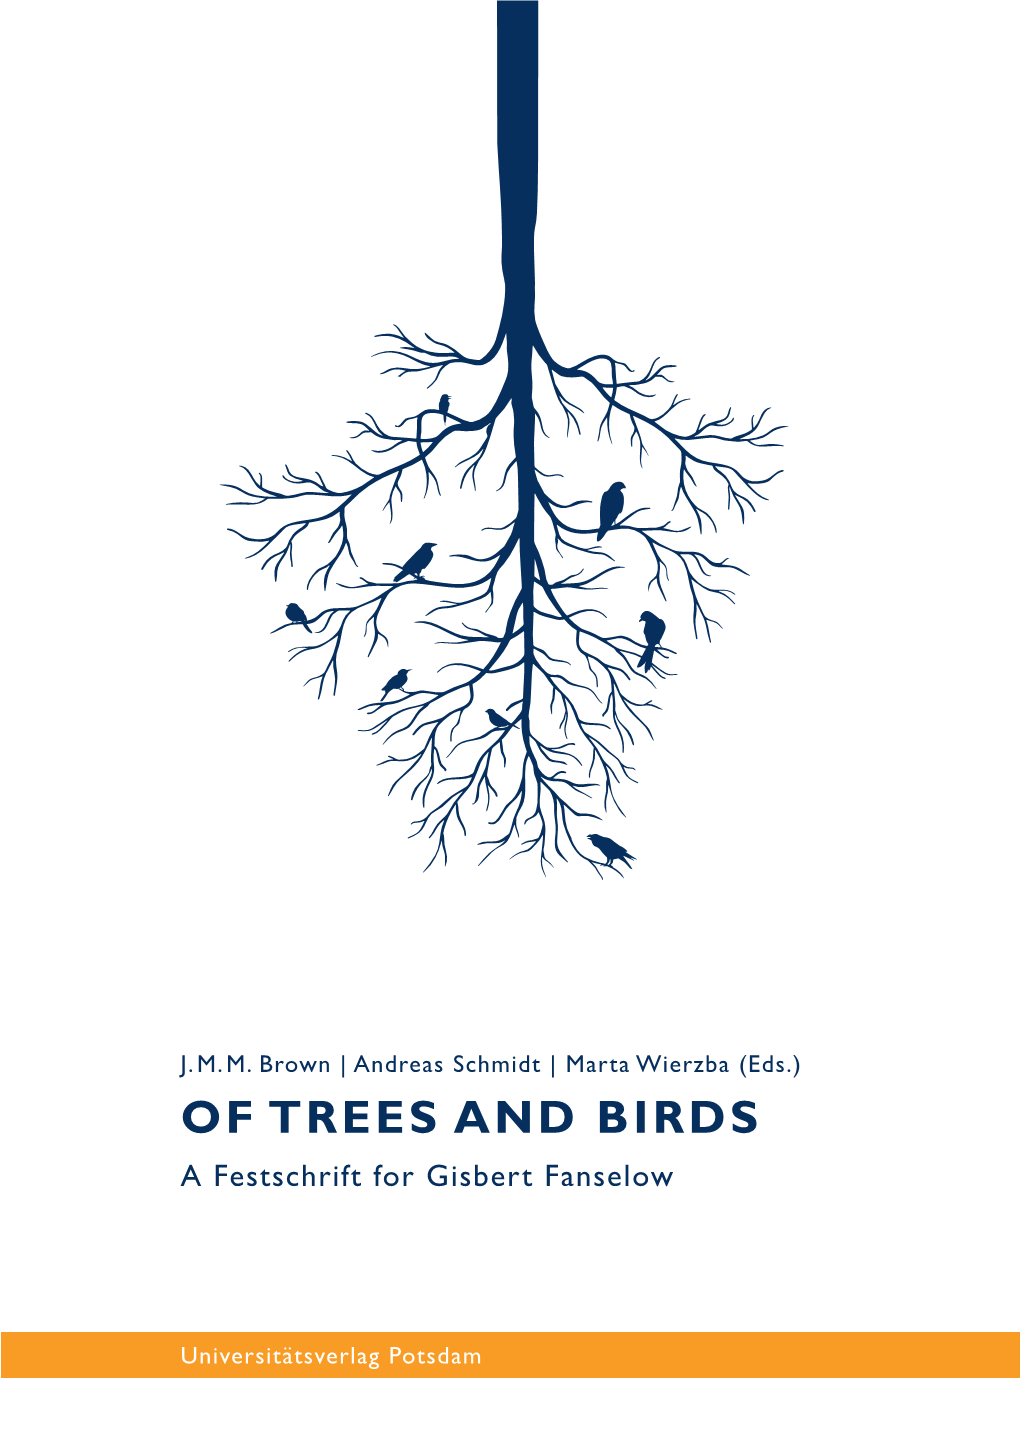 Of Trees and Birds : a Festschrift for Gisbert Fanselow